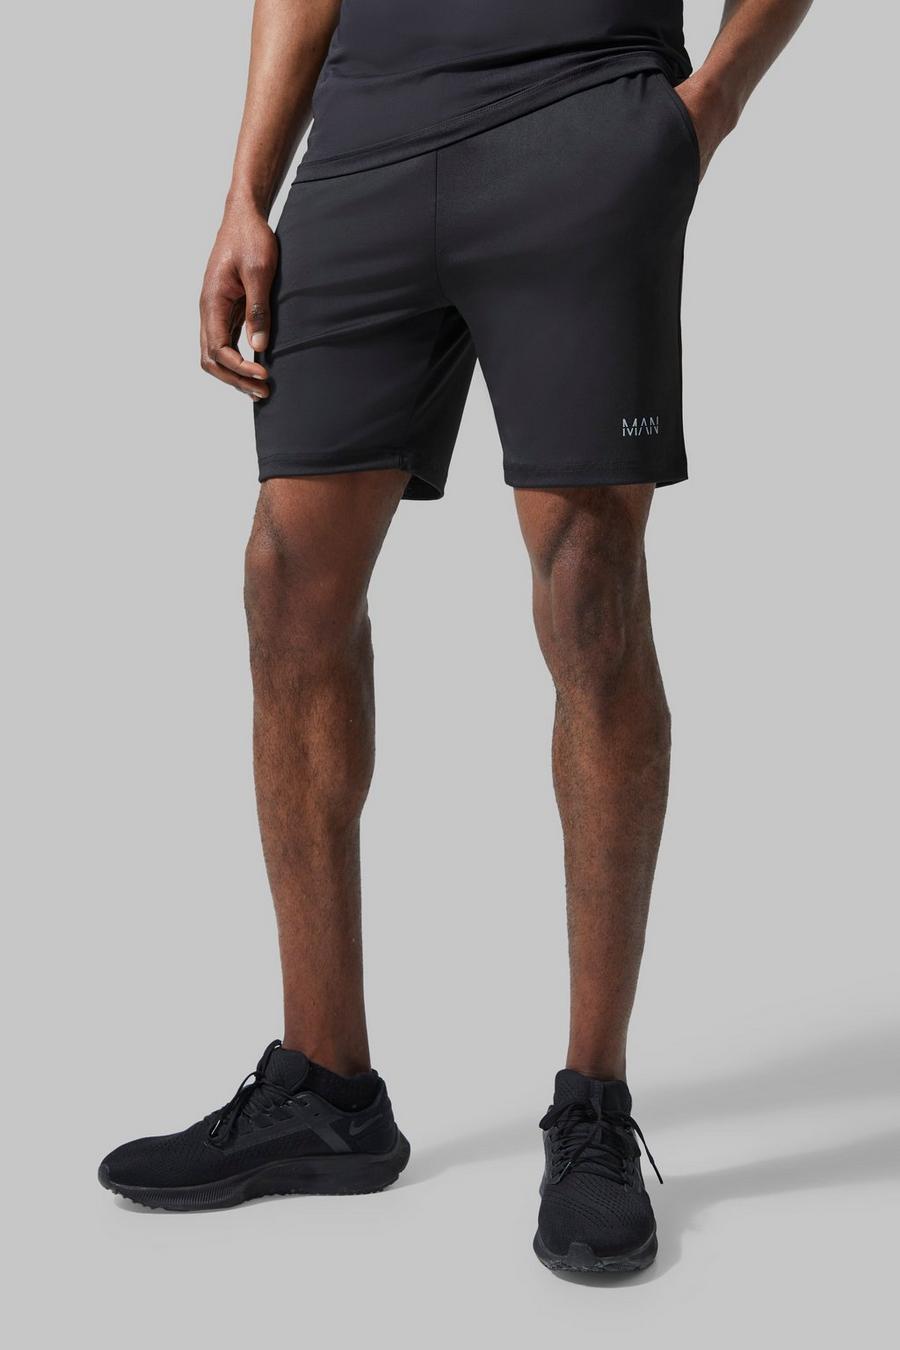 Pantalón corto MAN Active deportivo resistente, Black nero